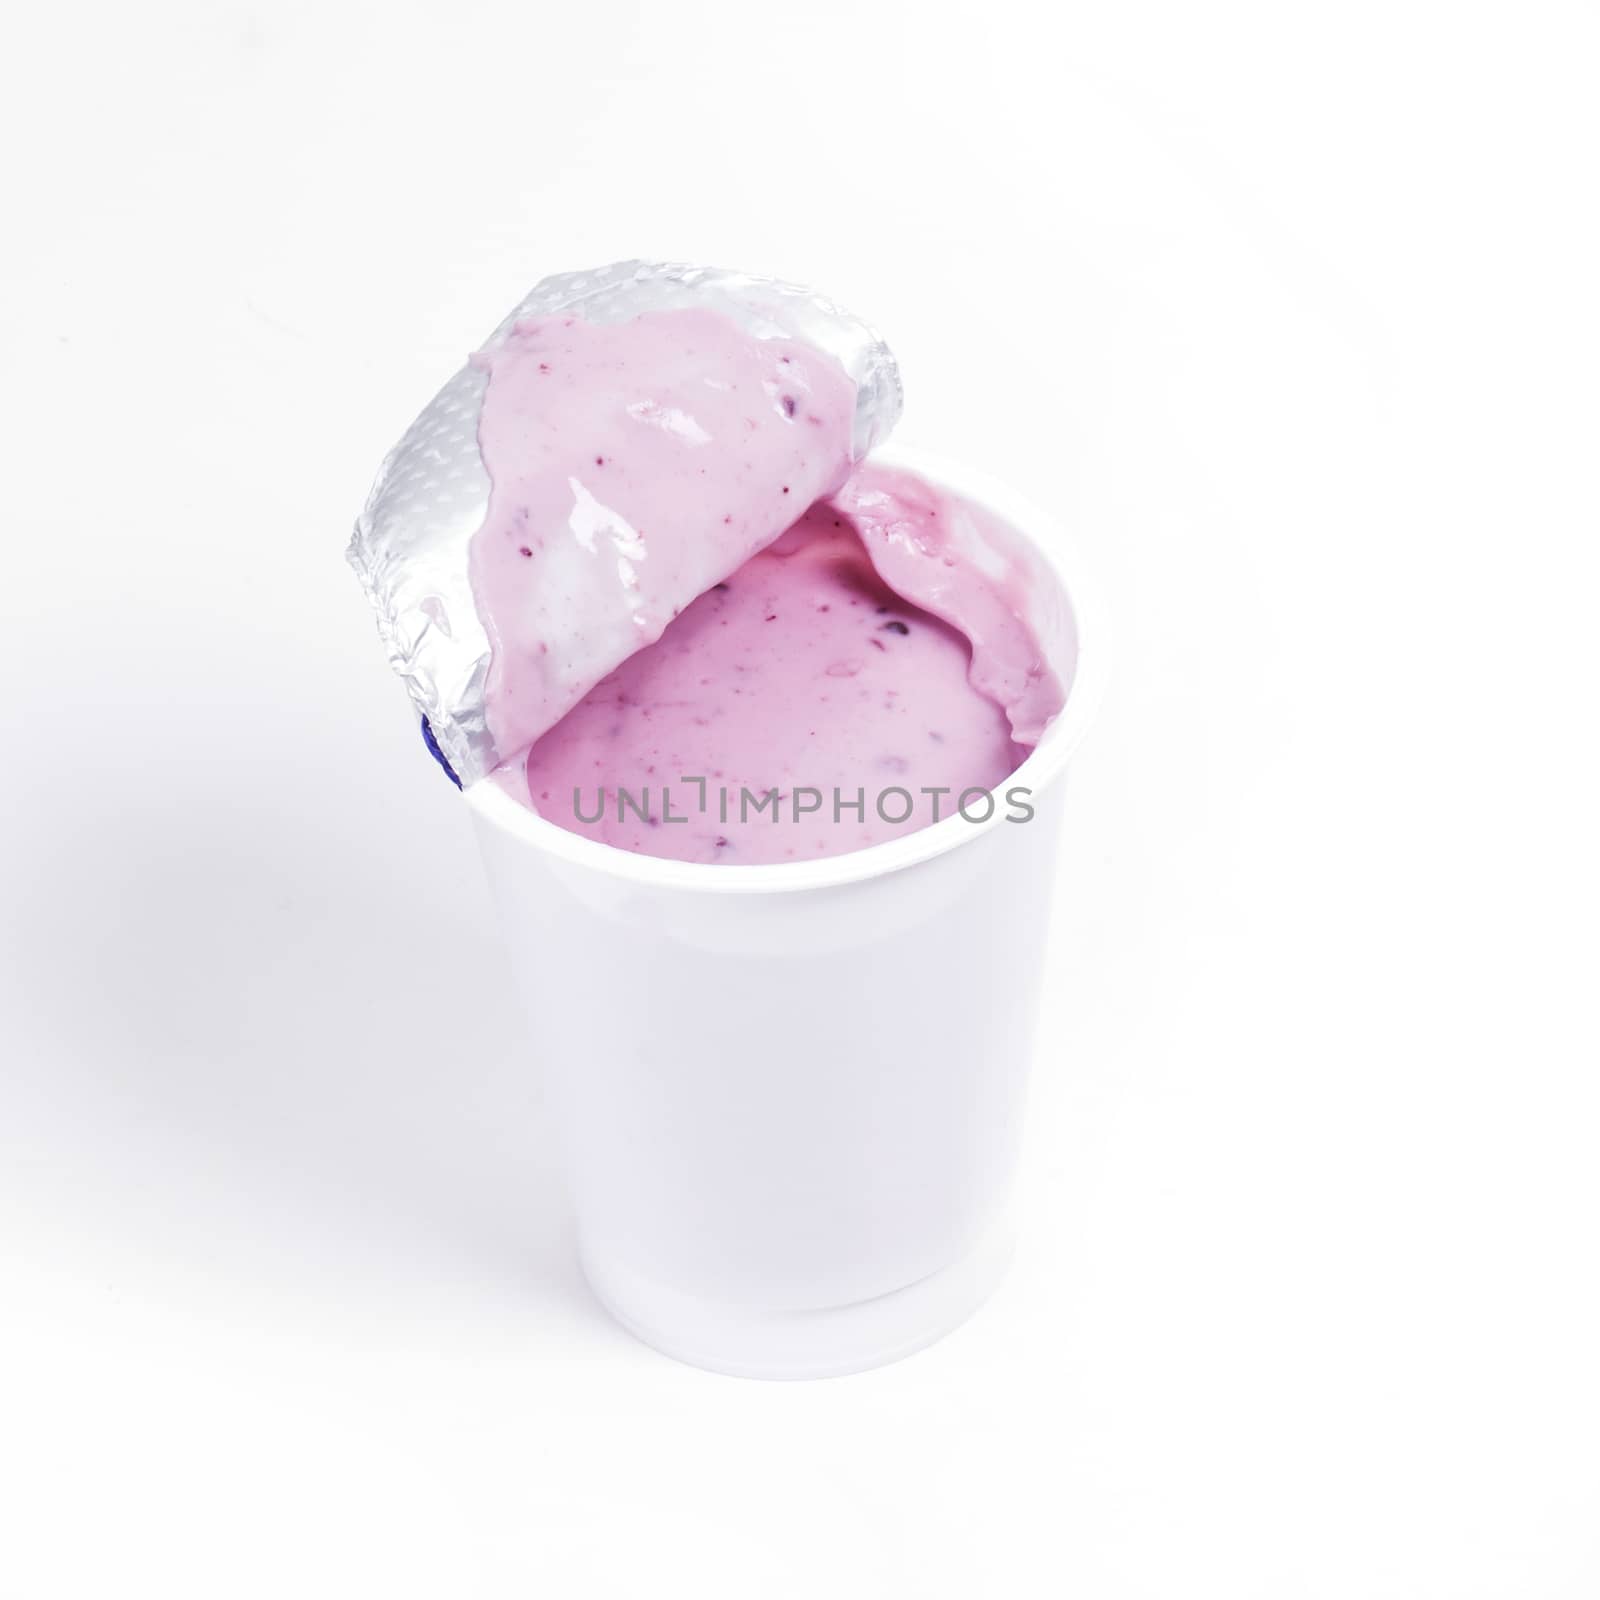 Blueberry yoghurt by rufatjumali